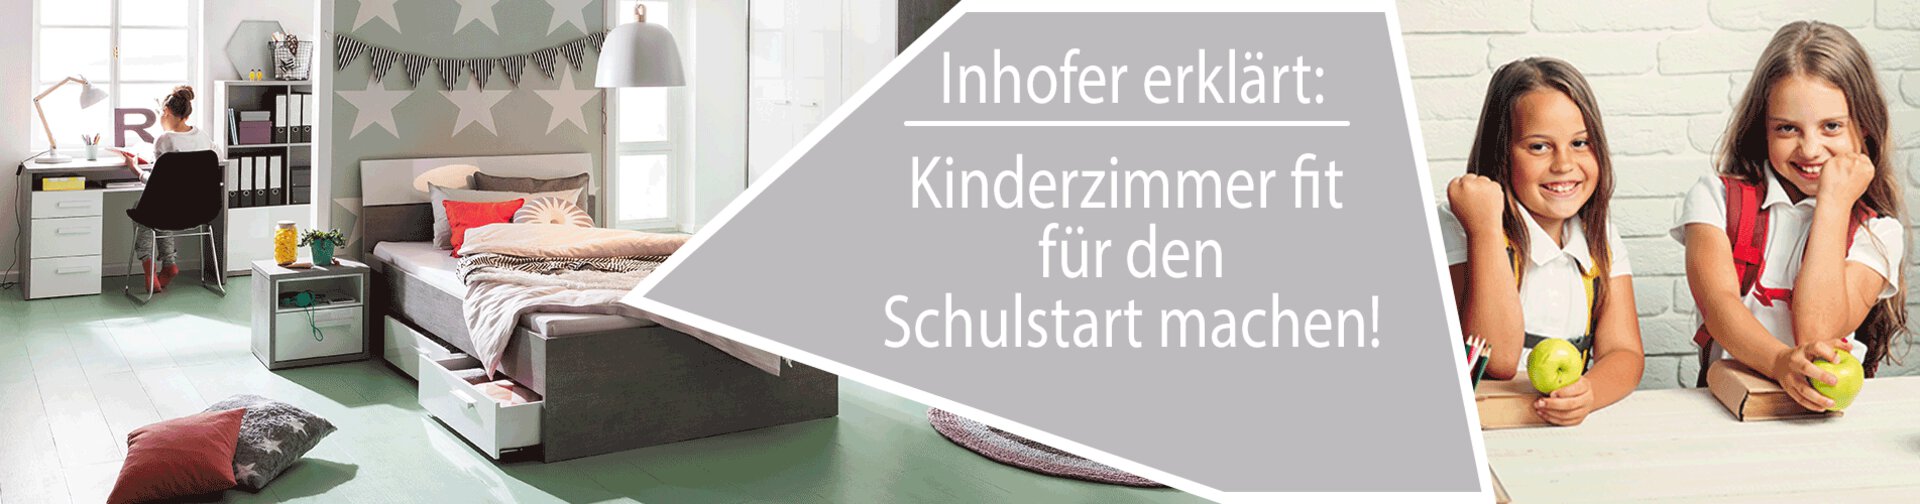 Inhofer erklärt: Kinderzimmer bereit für den Schulstart machen